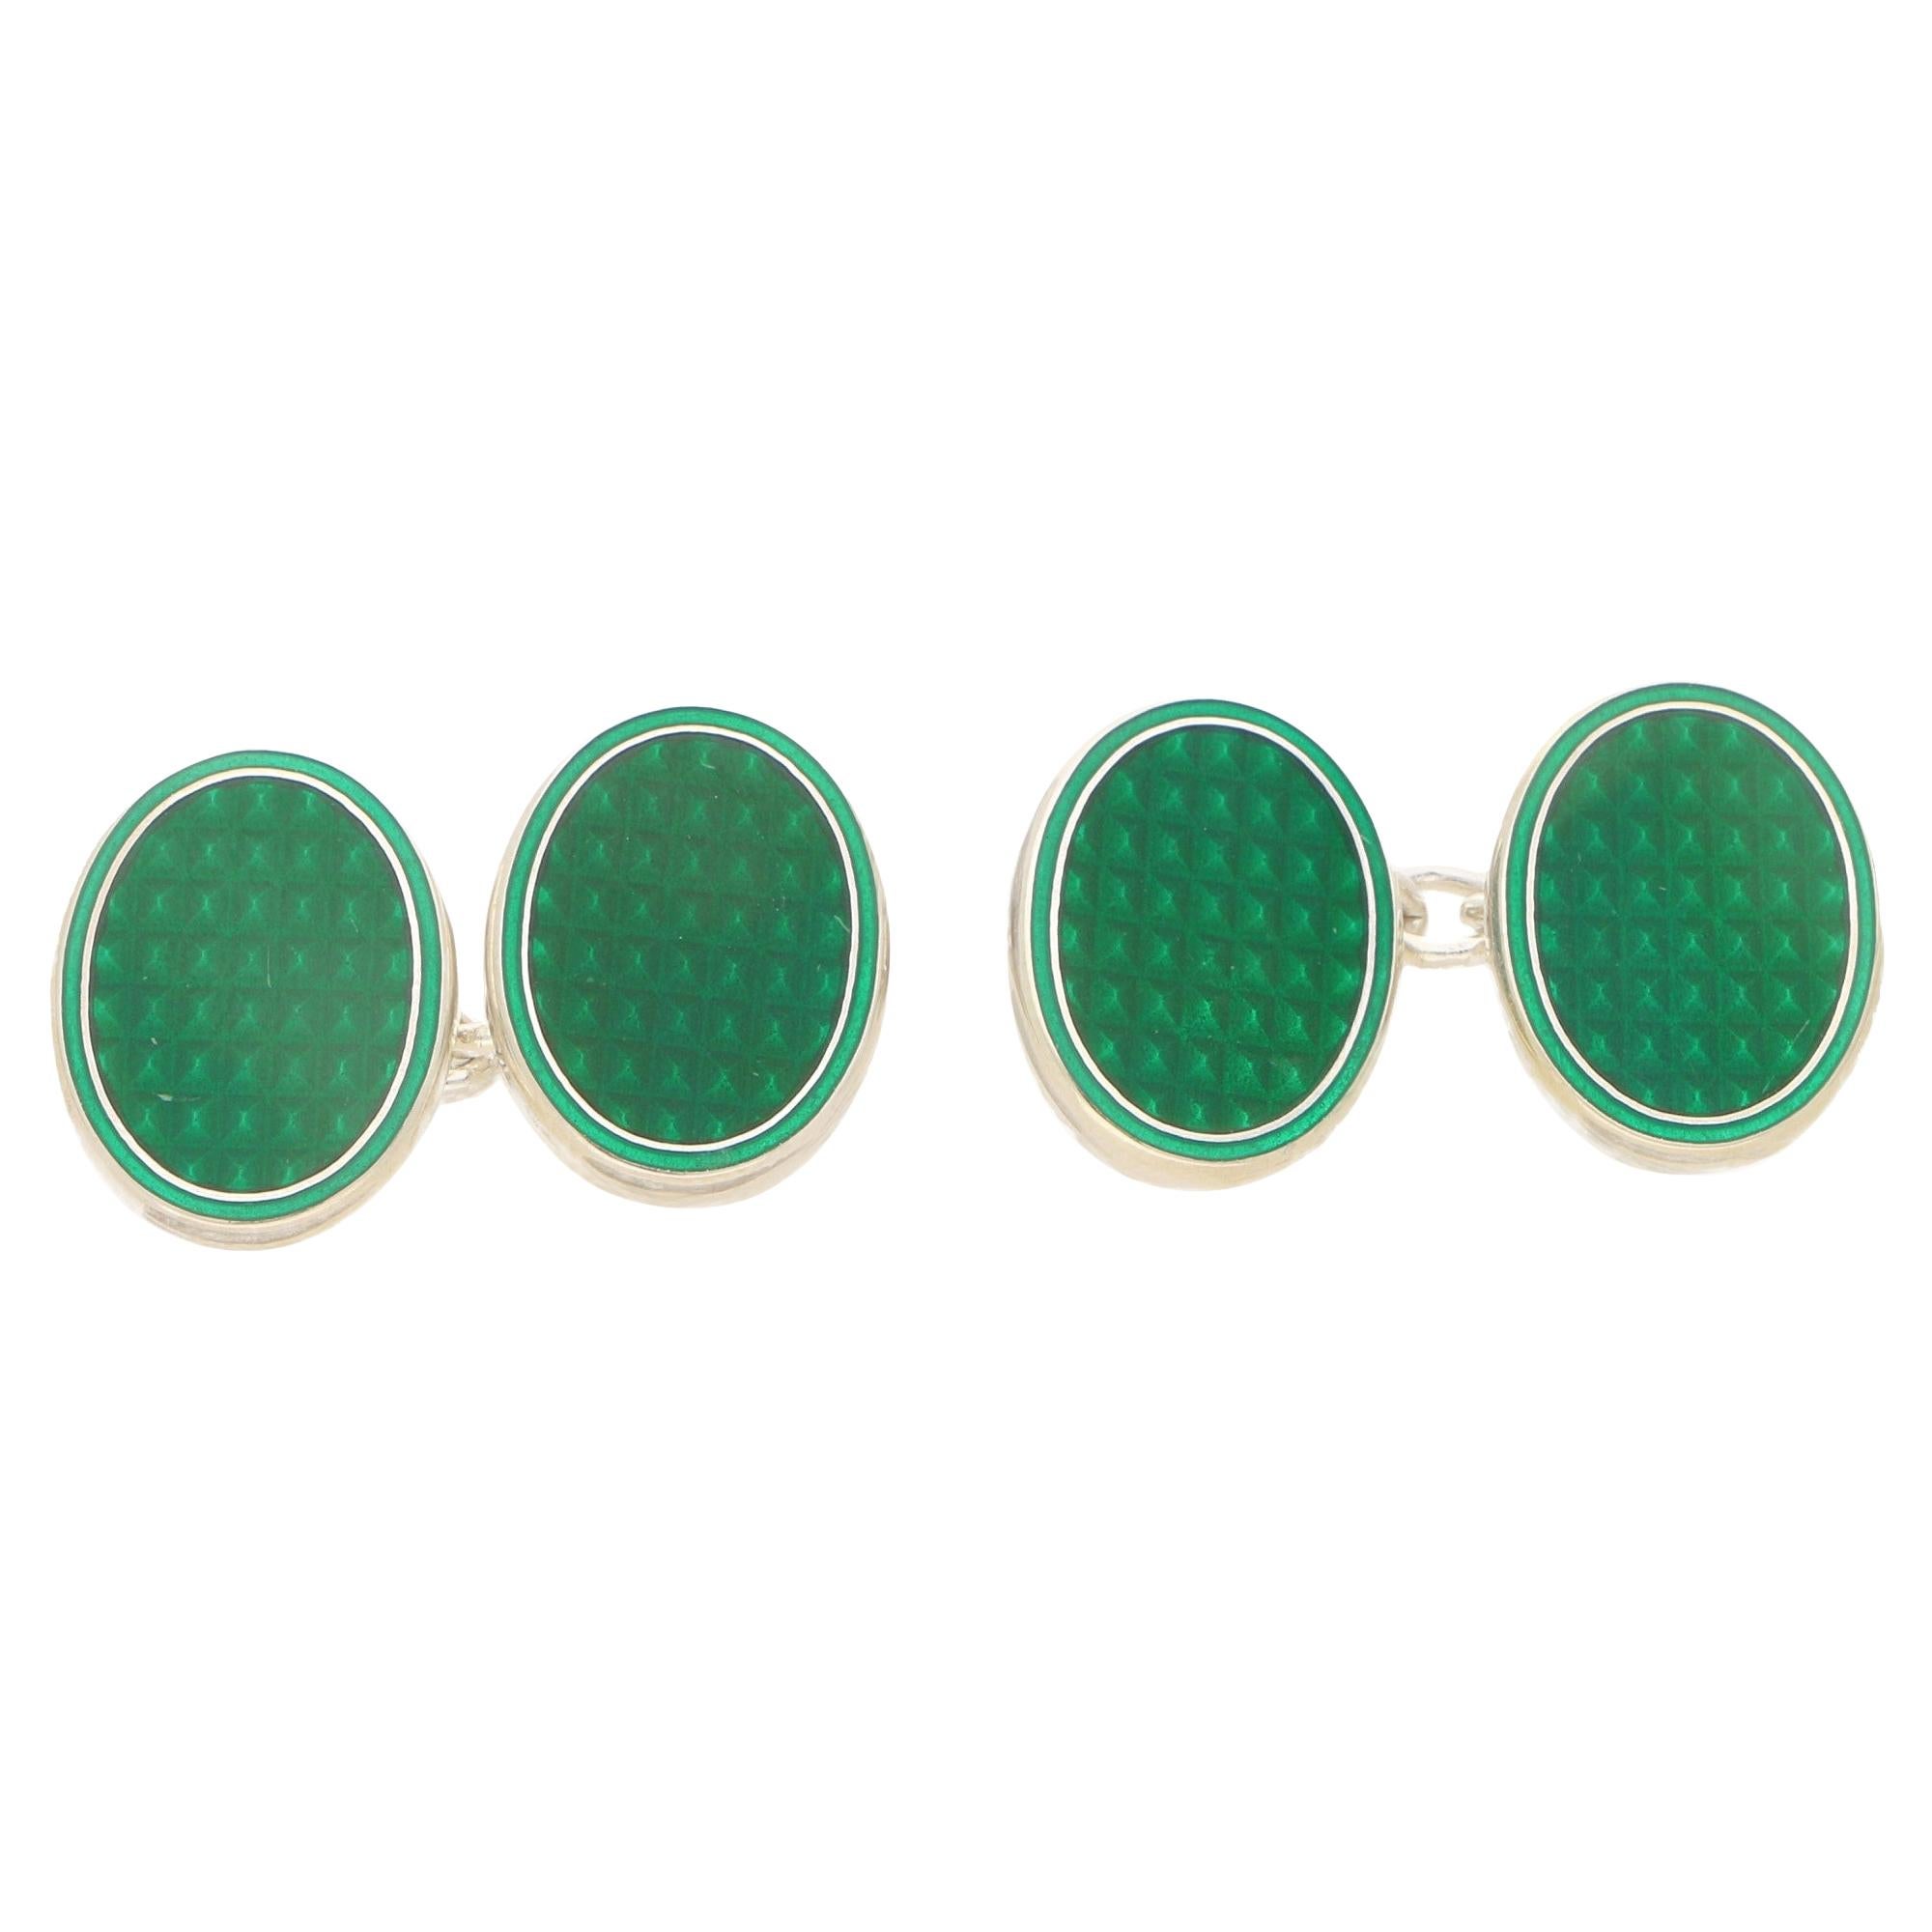 Emerald Green Enamel Reflective Oval Chain Cufflinks Set in Sterling Silver